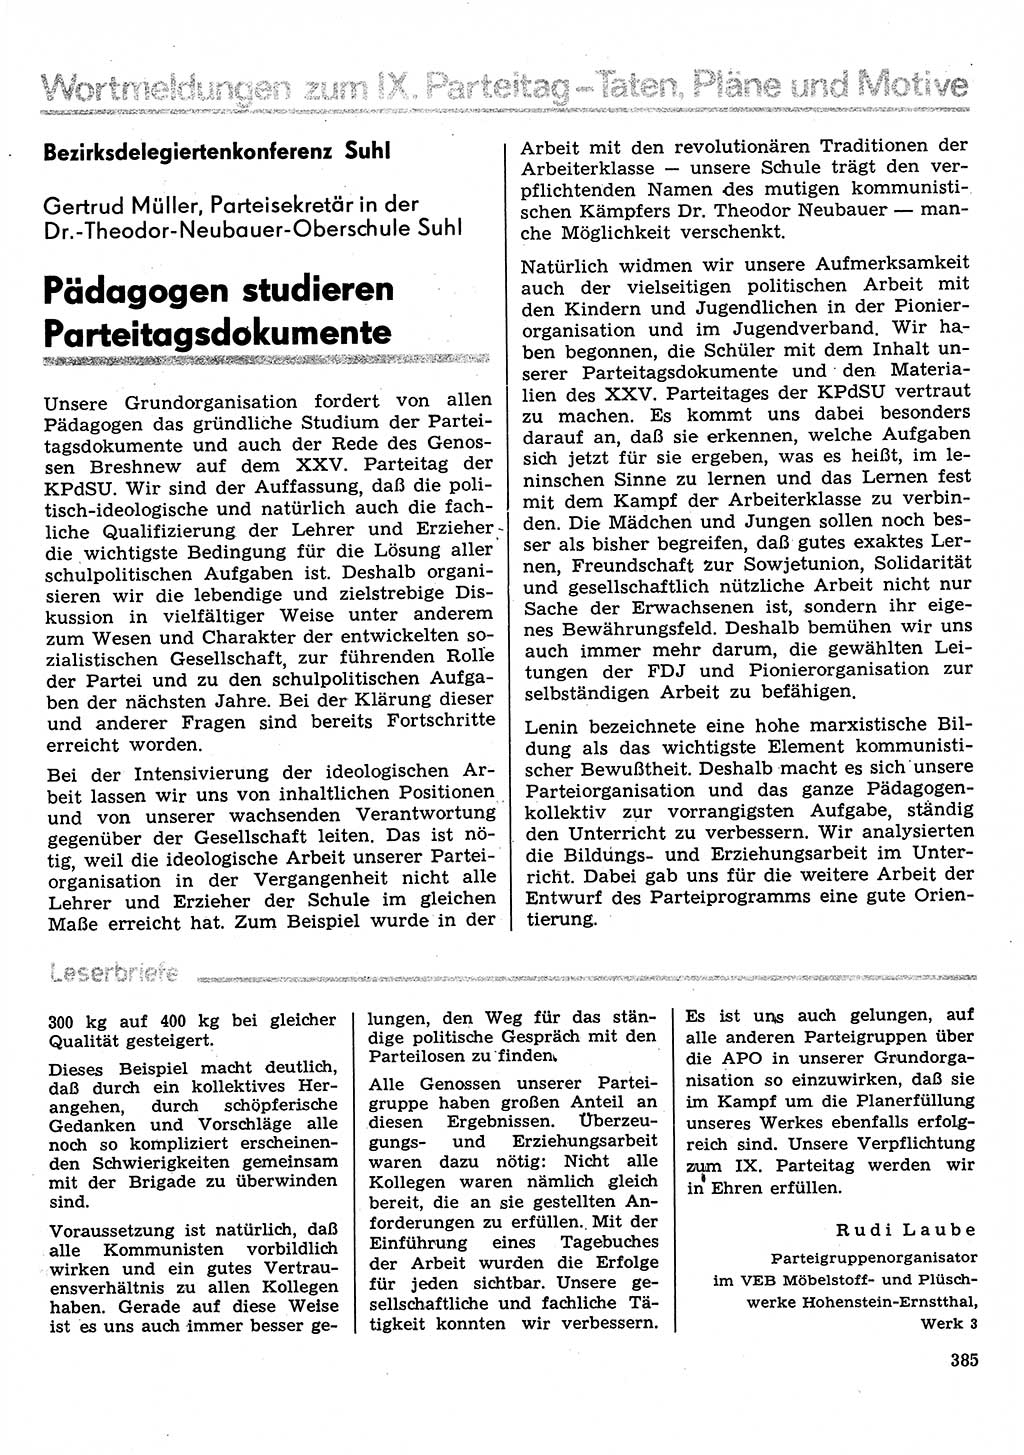 Neuer Weg (NW), Organ des Zentralkomitees (ZK) der SED (Sozialistische Einheitspartei Deutschlands) für Fragen des Parteilebens, 31. Jahrgang [Deutsche Demokratische Republik (DDR)] 1976, Seite 385 (NW ZK SED DDR 1976, S. 385)